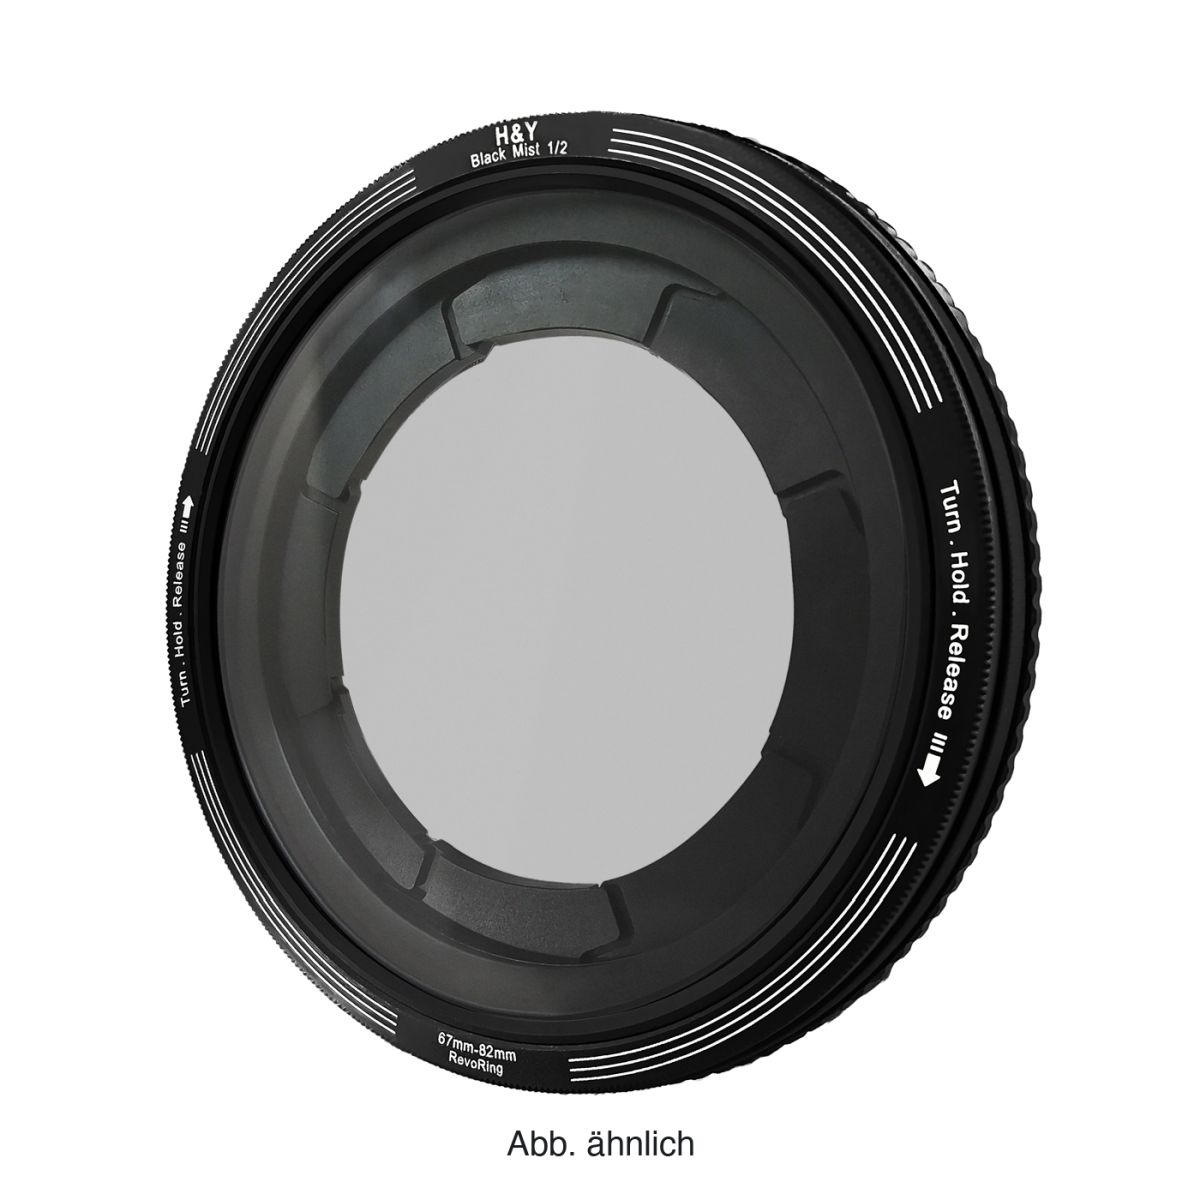 H&Y REVORING 46-62 mm Black Mist 1/2 Filter